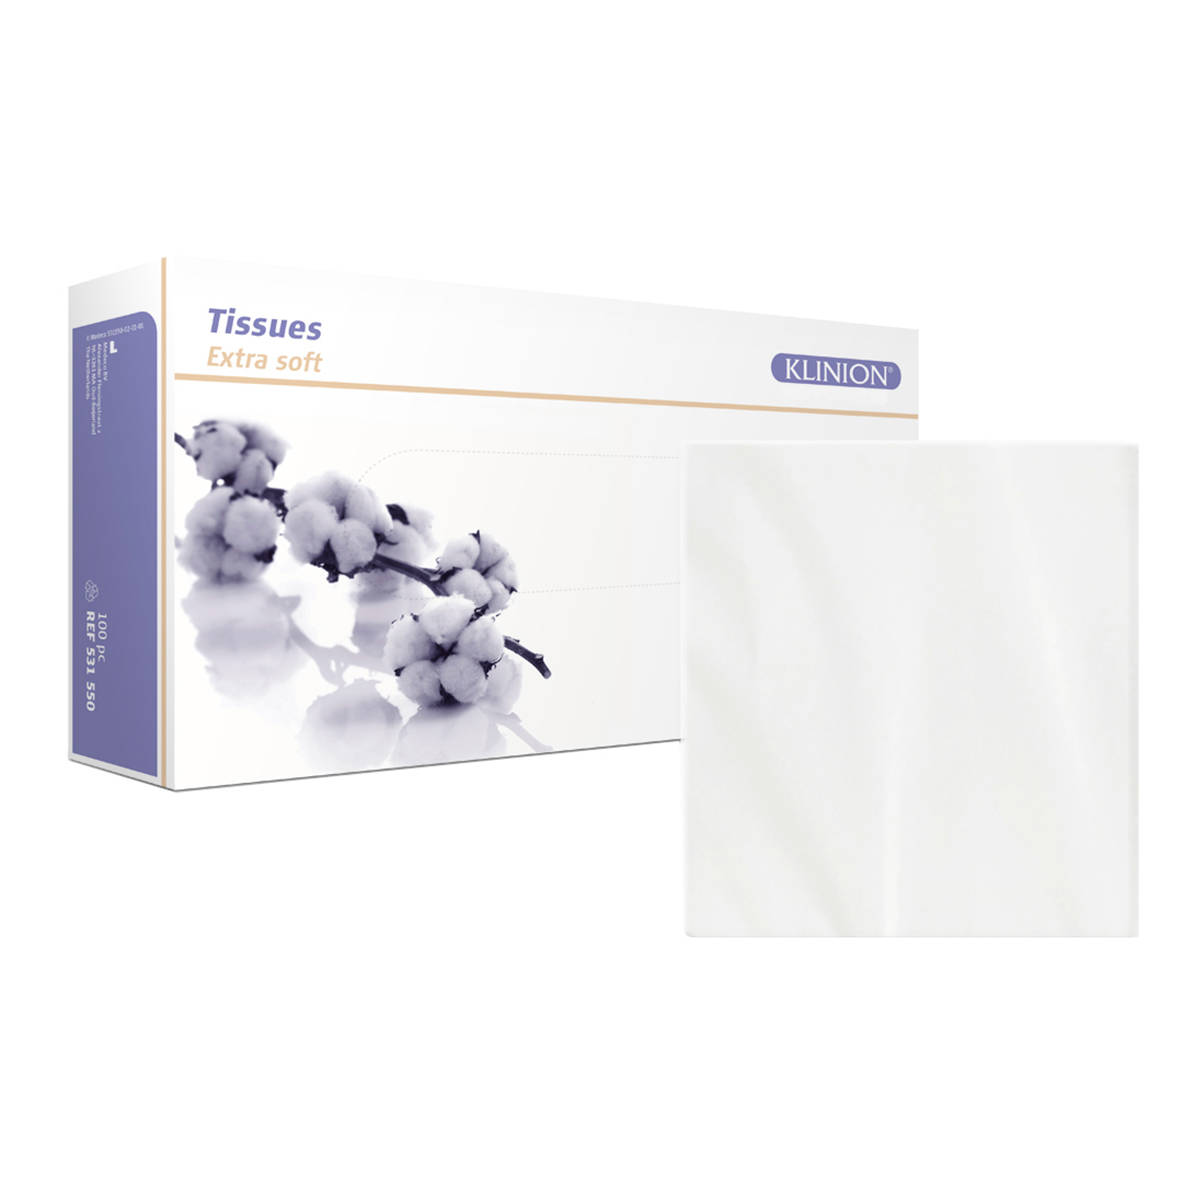 Tissue with tissue box